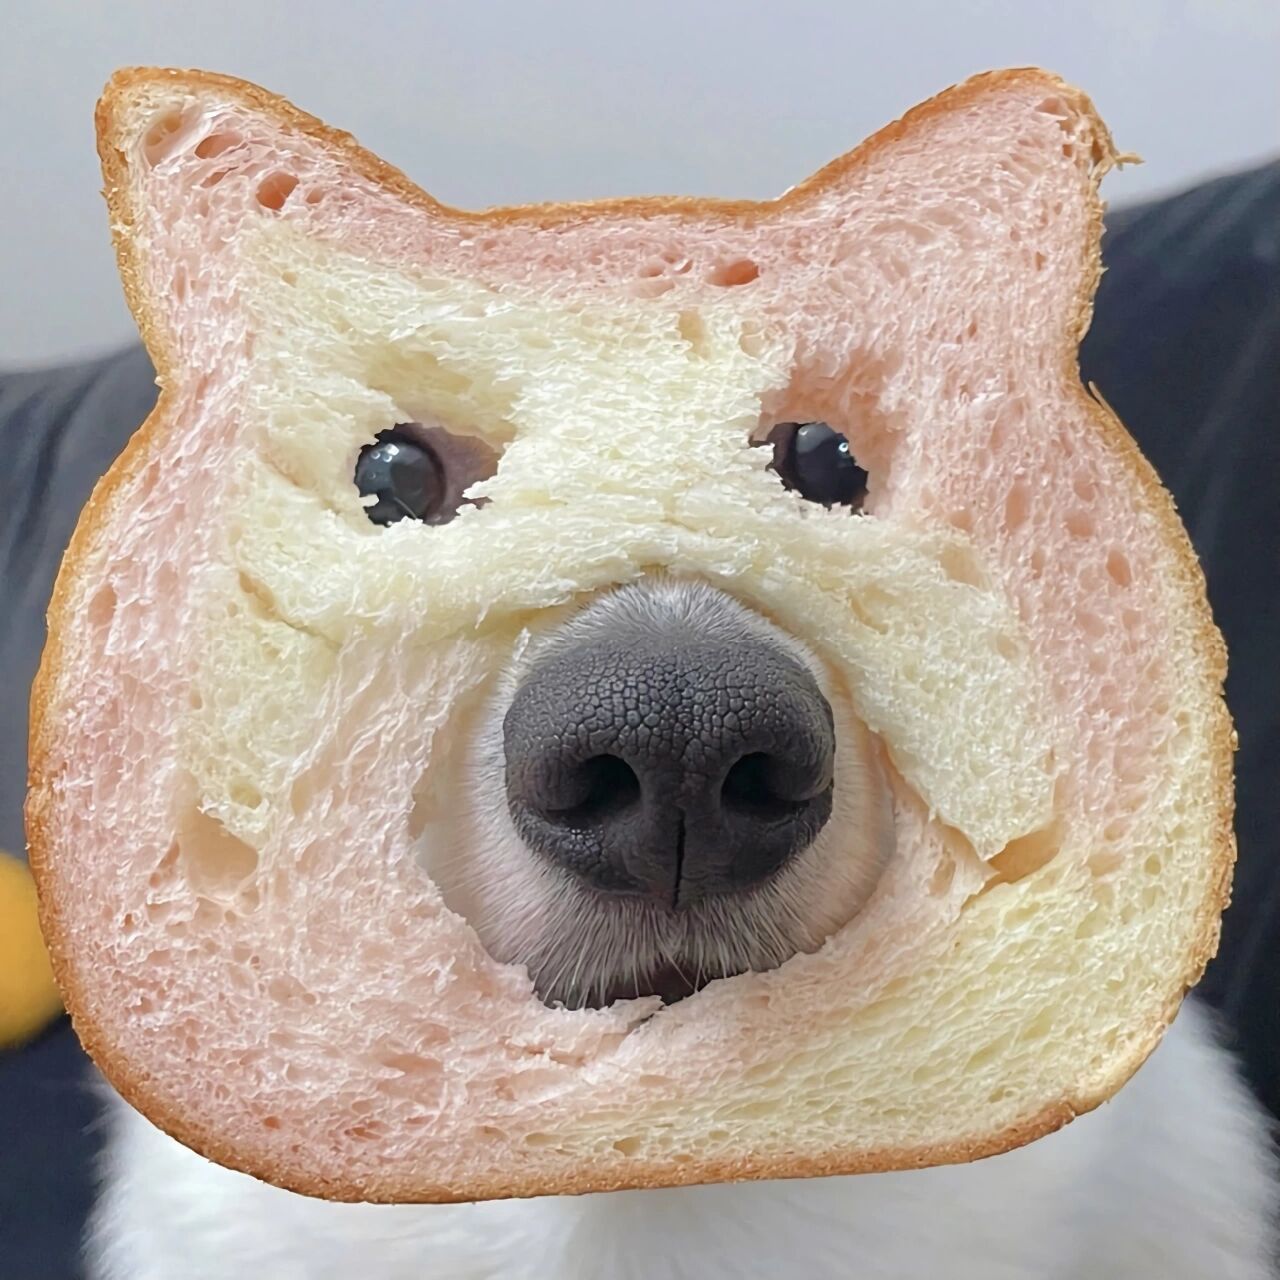 面包狗头像情侣图片